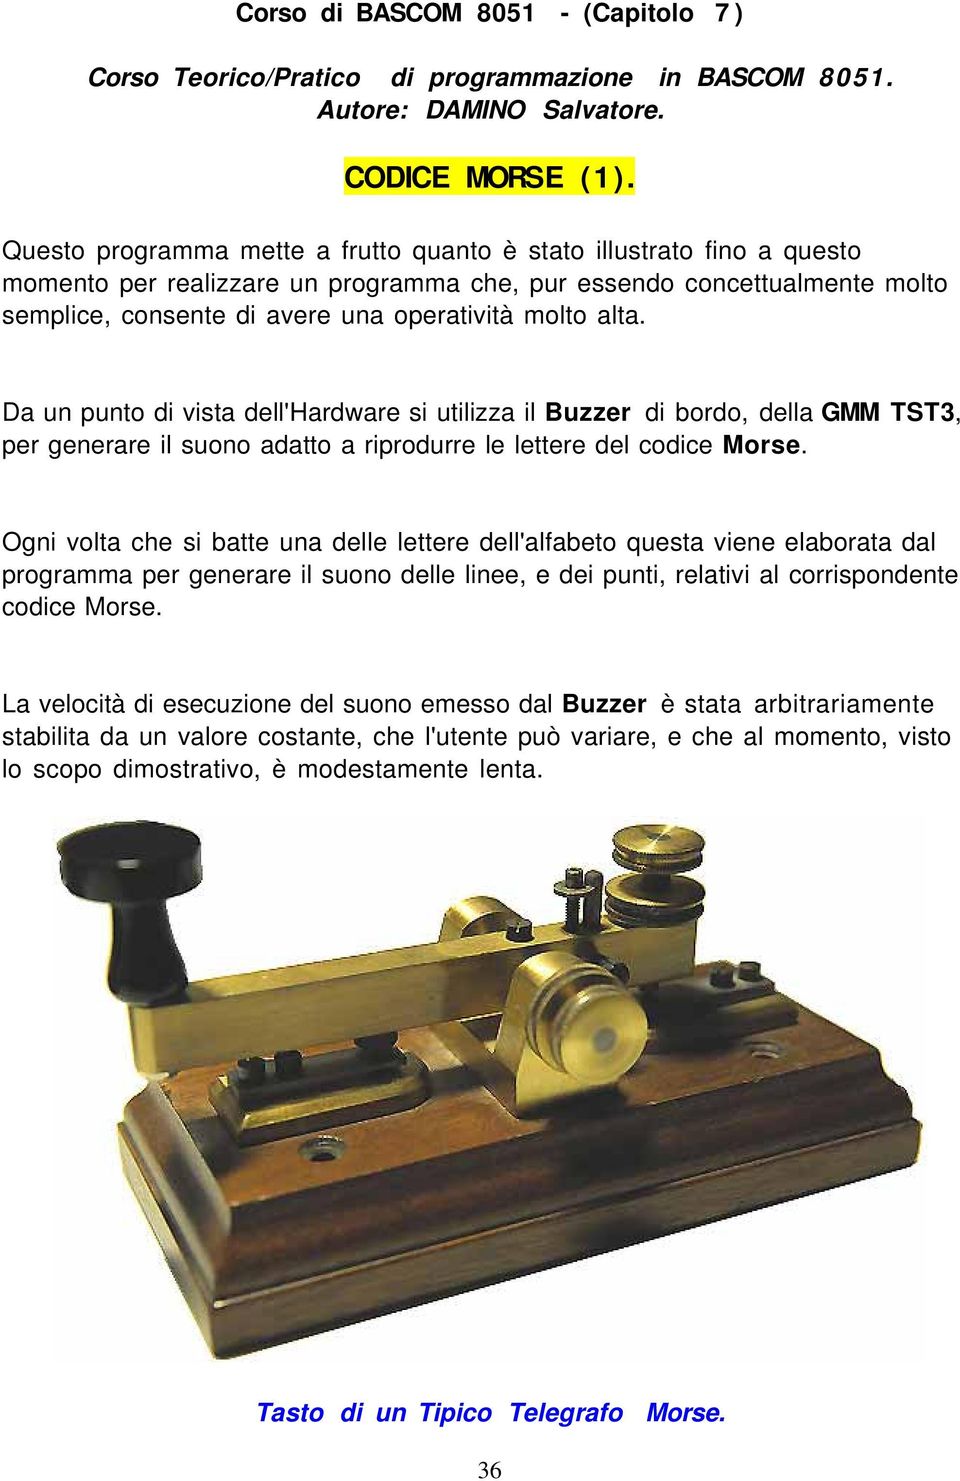 alta. Da un punto di vista dell'hardware si utilizza il Buzzer di bordo, della GMM TST3, per generare il suono adatto a riprodurre le lettere del codice Morse.